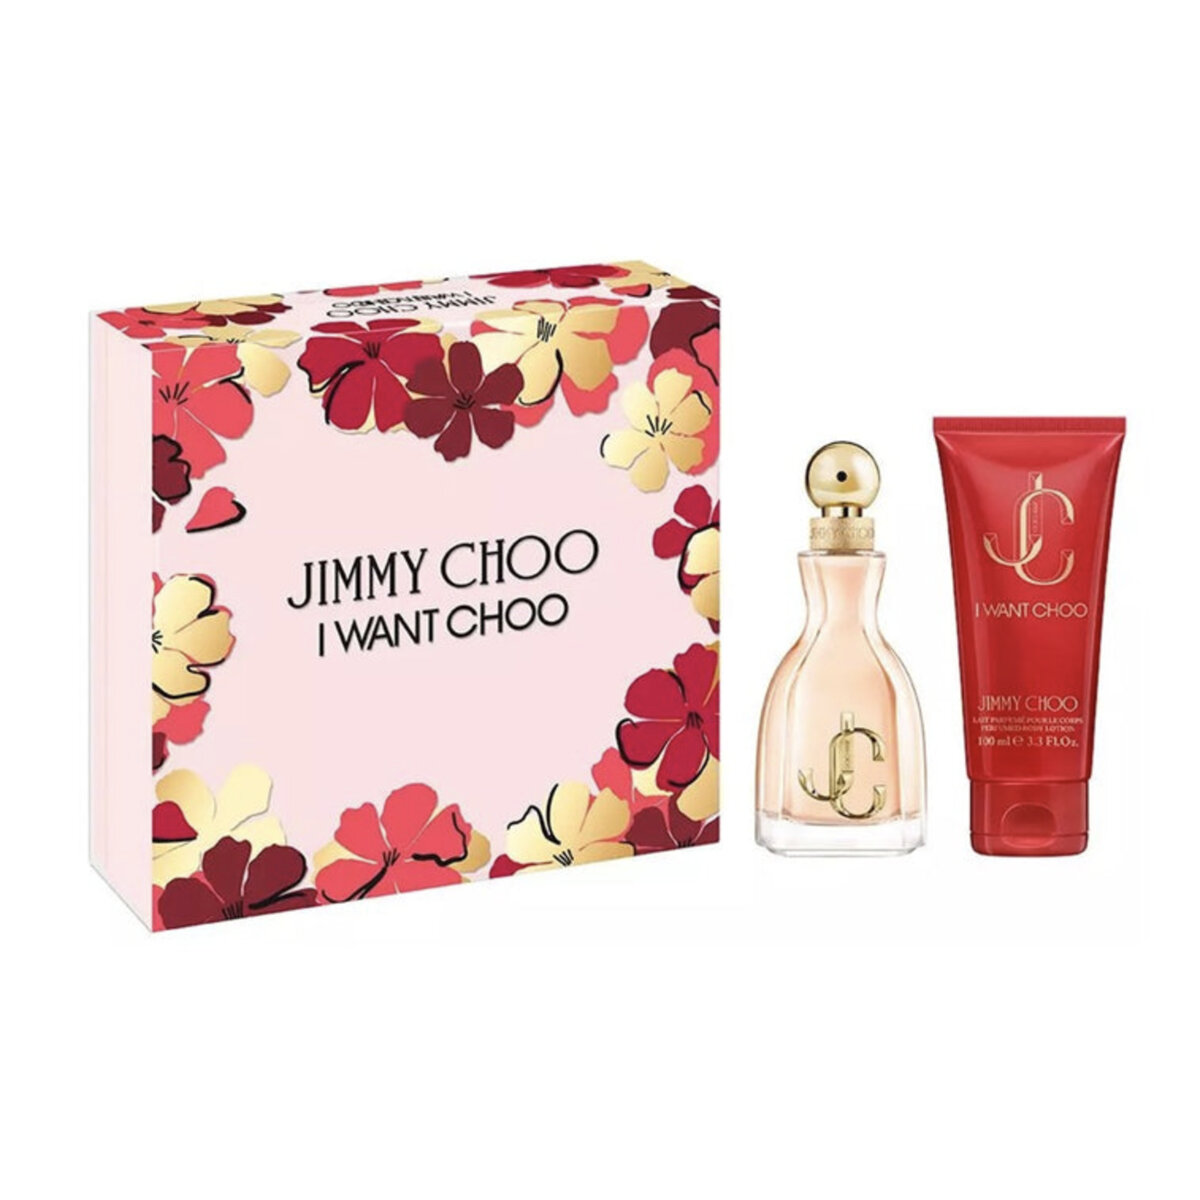 Jimmy Choo I Want Choo 60ml EDP Gift Set